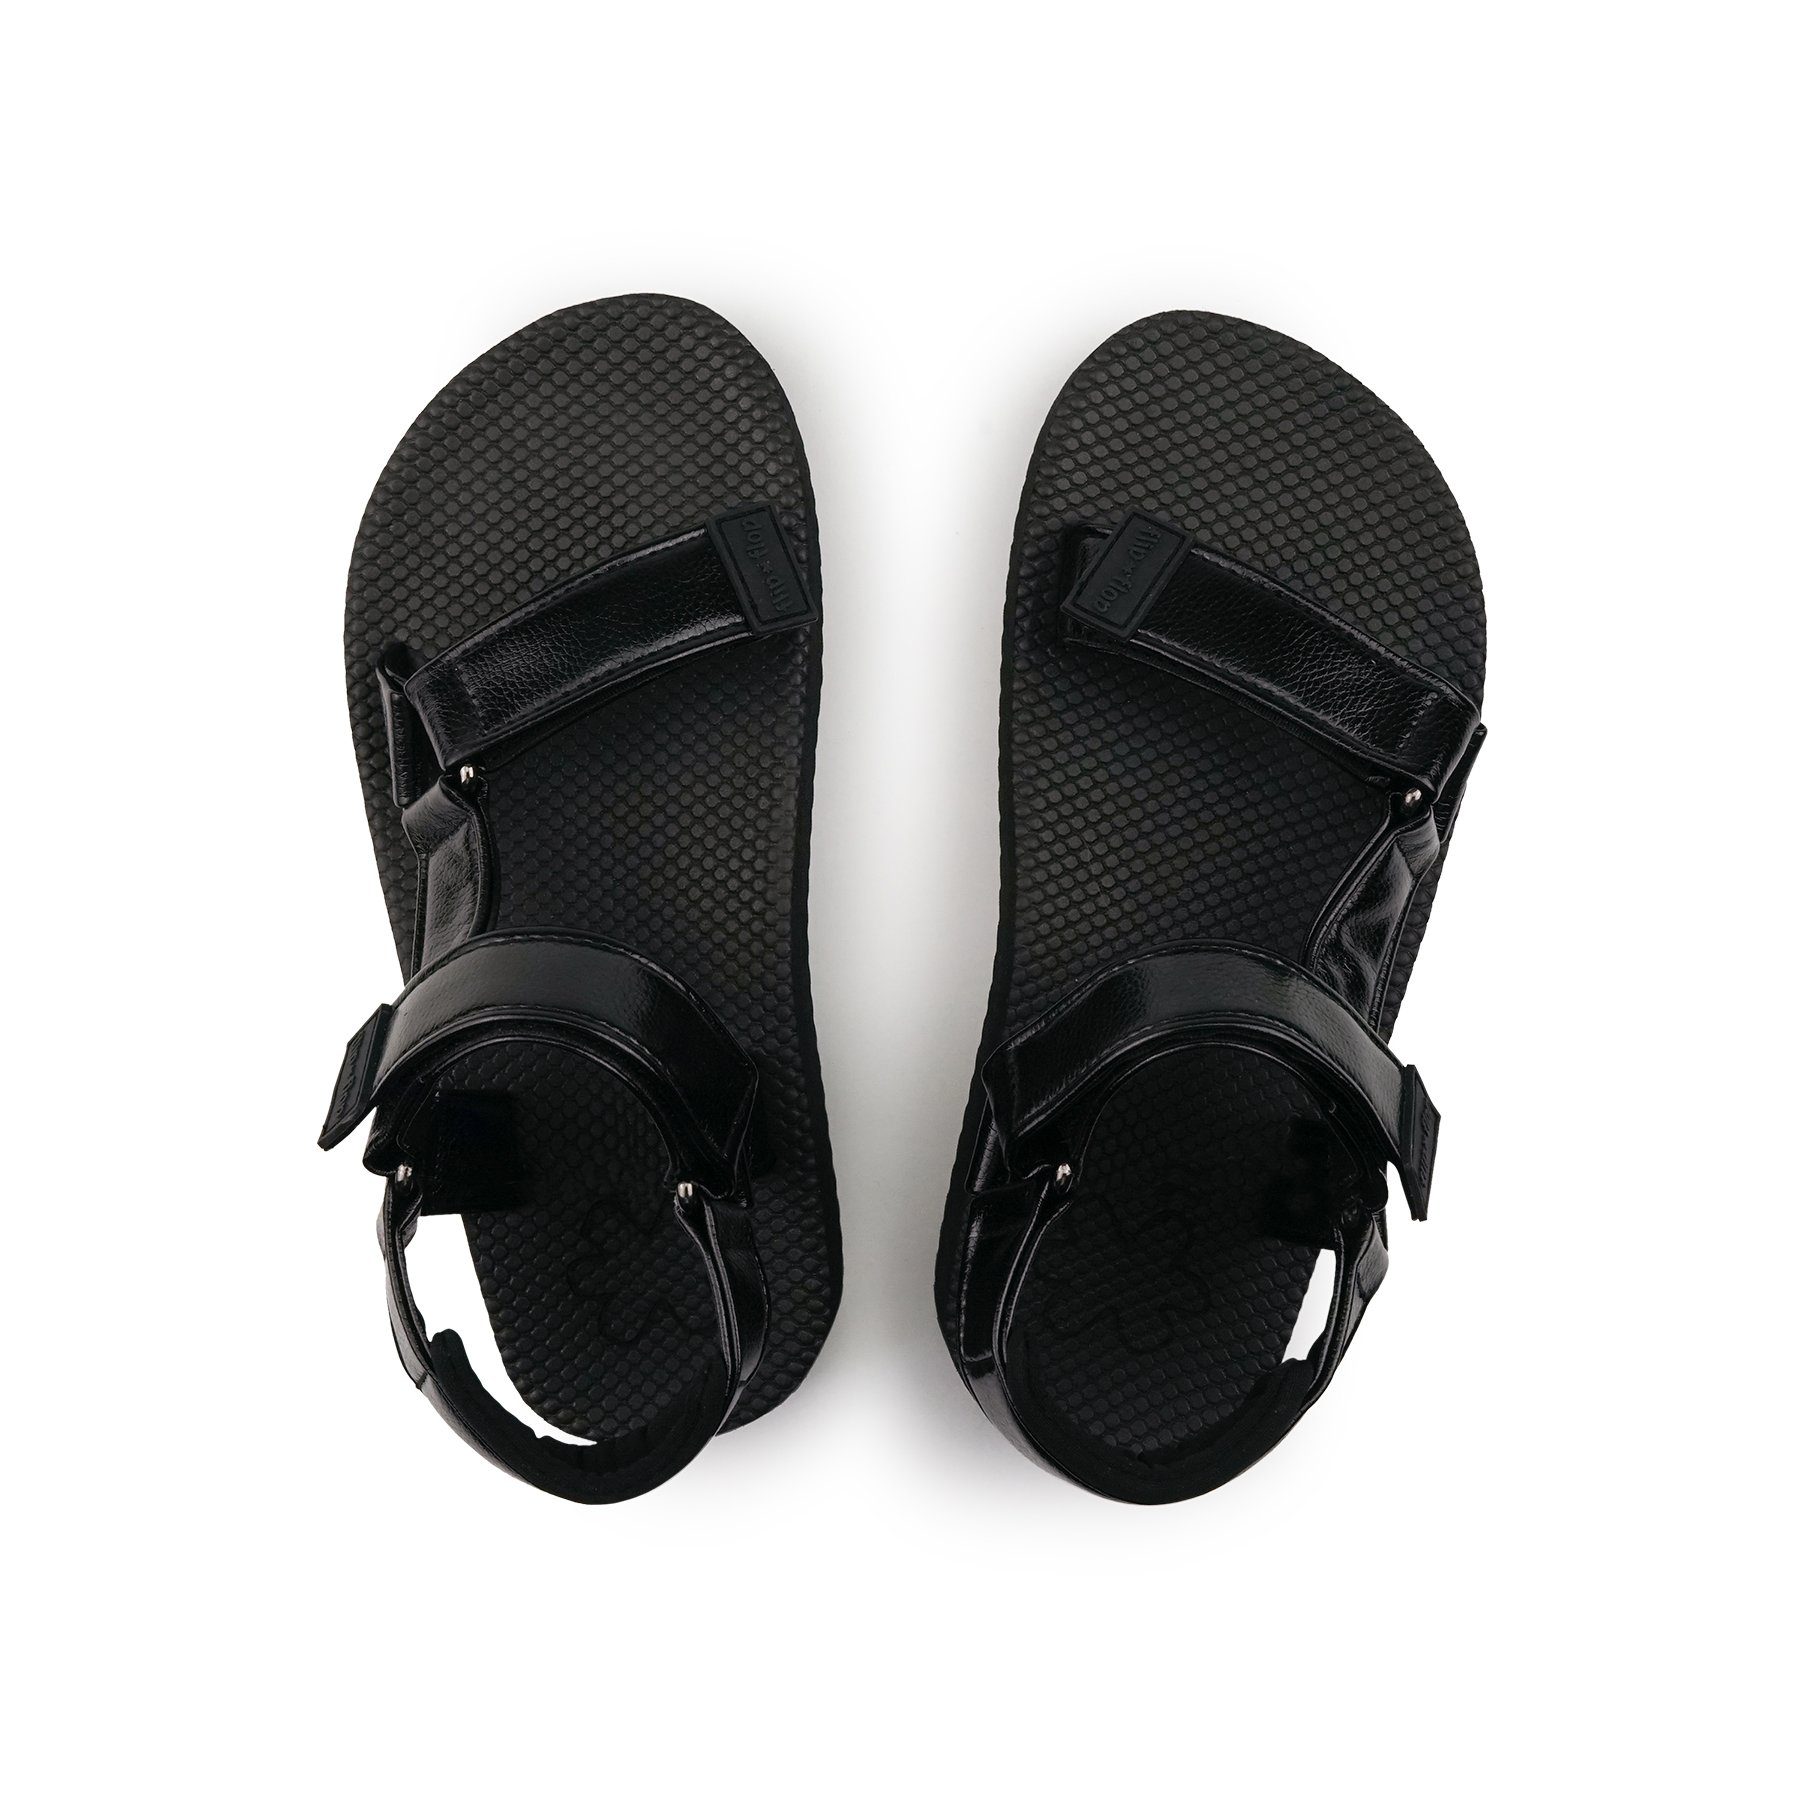 Flop Flip schwarz comfy*sandal Sandale